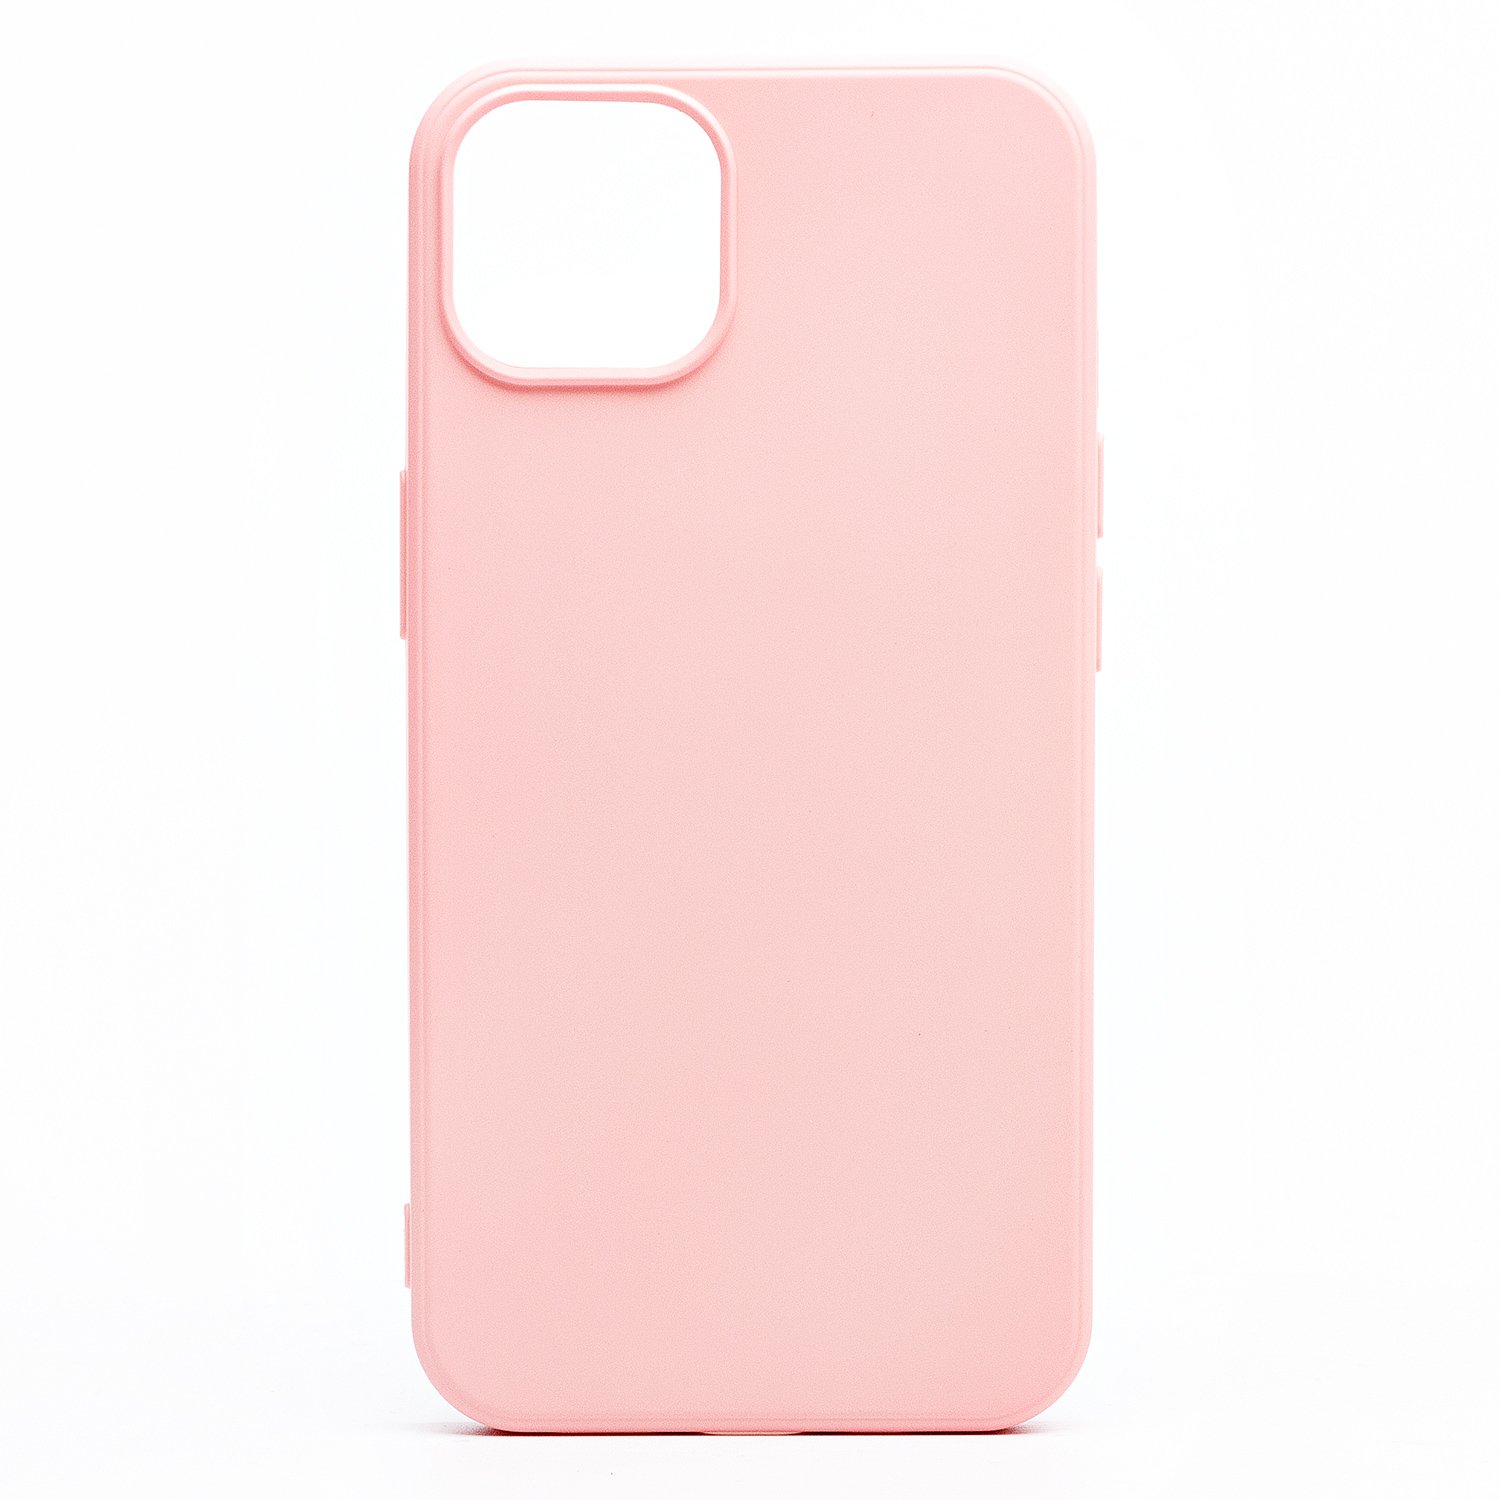 Чехол-накладка Activ Full Original Design для смартфона Apple iPhone 13 mini, силикон, розовый (133239)